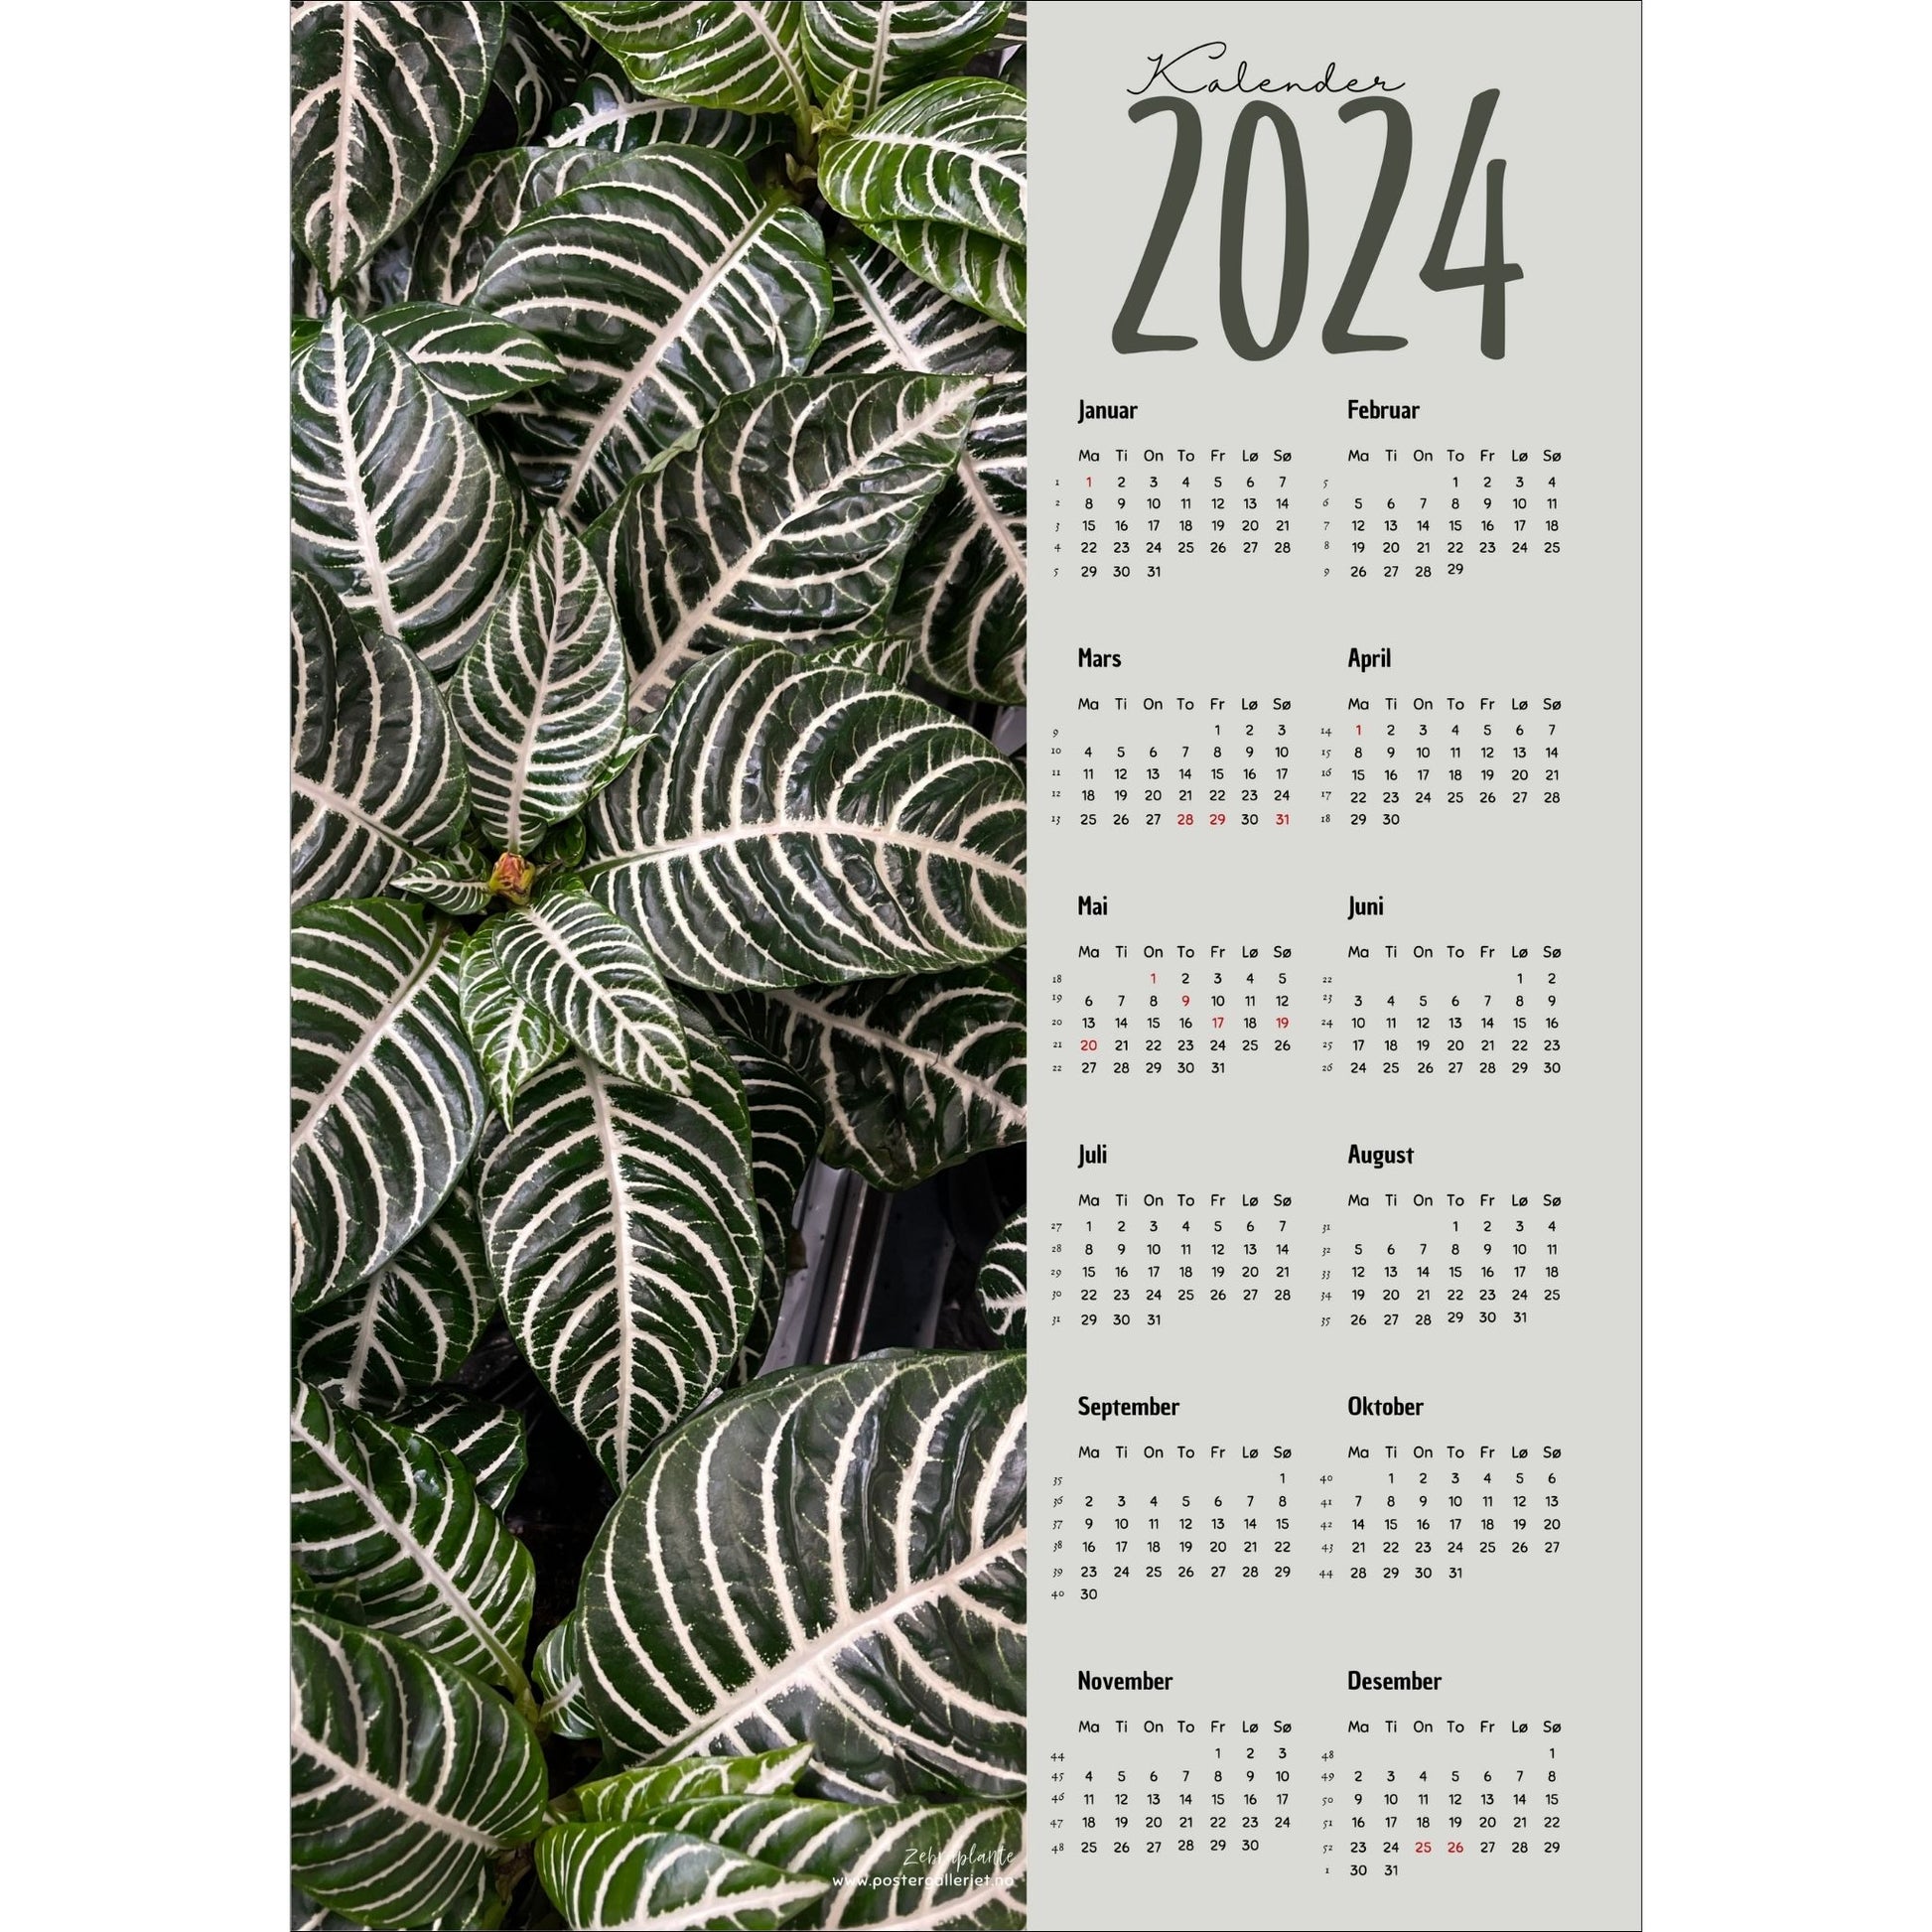 Kalender 2024 i grafisk print med fotomotiv. Halve vertikale side har et fotomotiv av en Zebra grønnplante. Den andre halvdelen er påført 12 måneder med ukenummer og anmerket høytidsdager. 